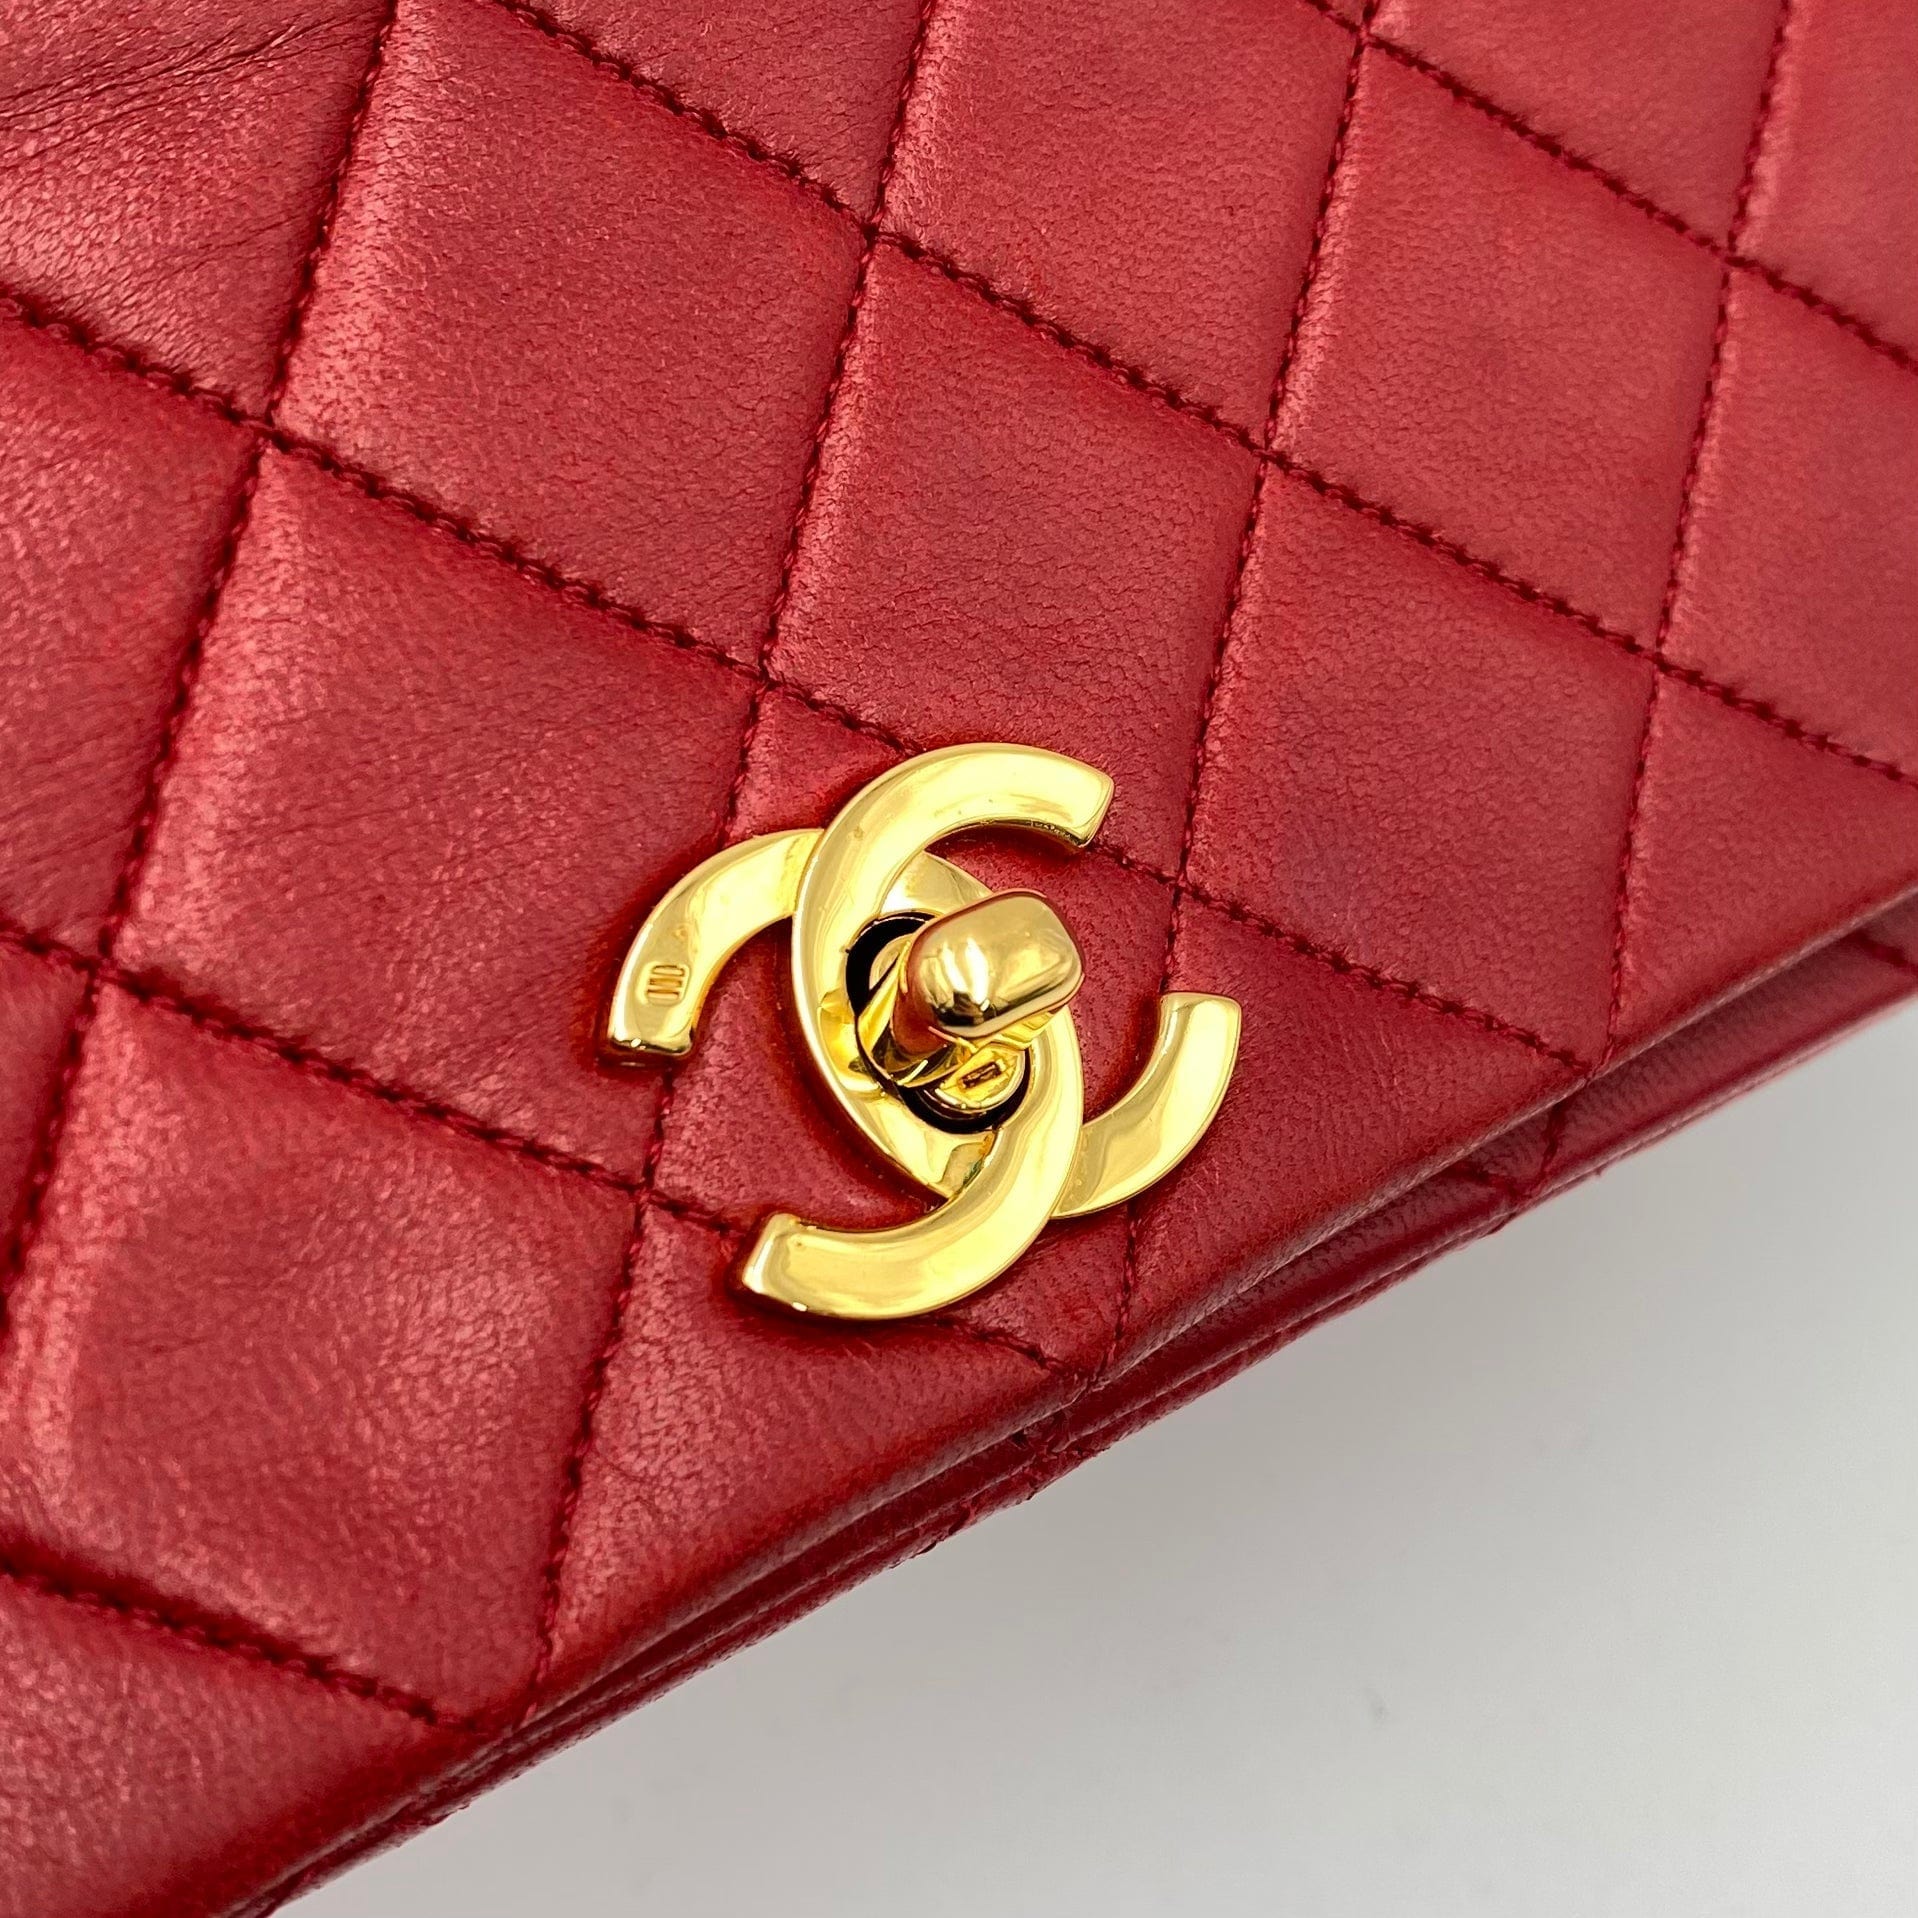 Chanel CHANEL VINTAGE FULL FLAP CHAIN SHOULDER BAG RED LAMB SKIN 90221025